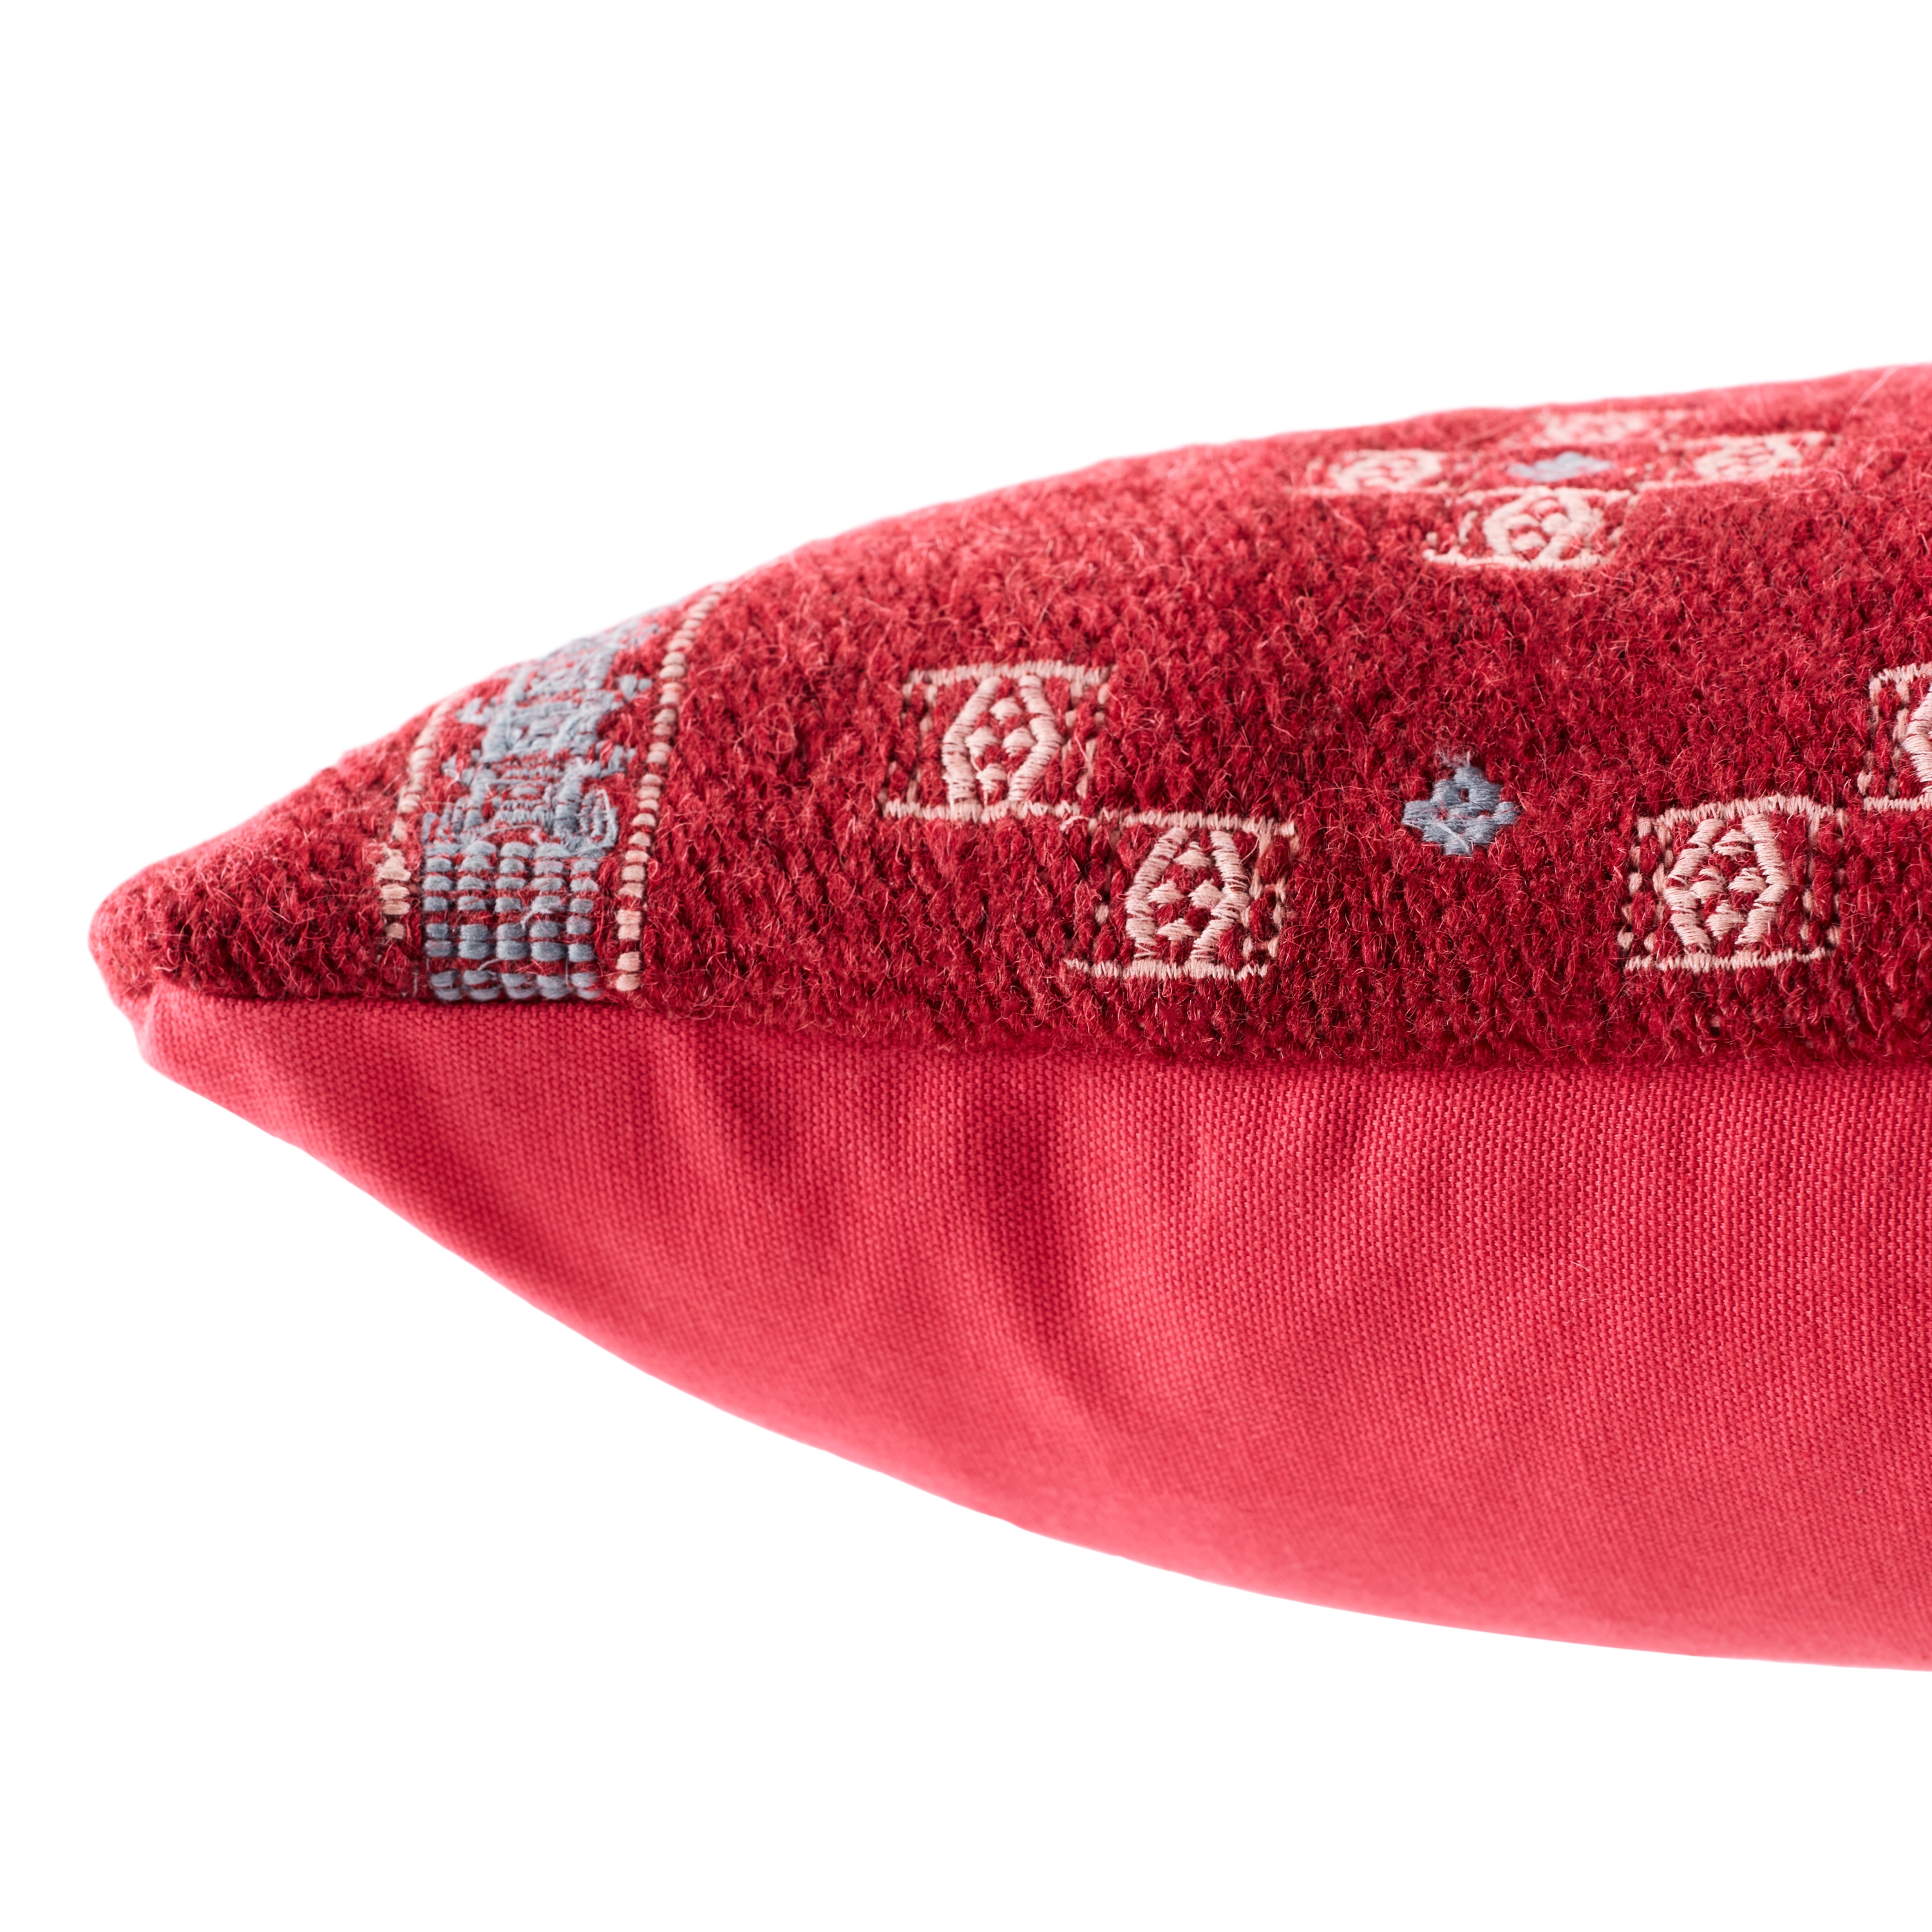 Katara Extra Long Lumbar Pillow, Red, 48" x 13" - Image 2